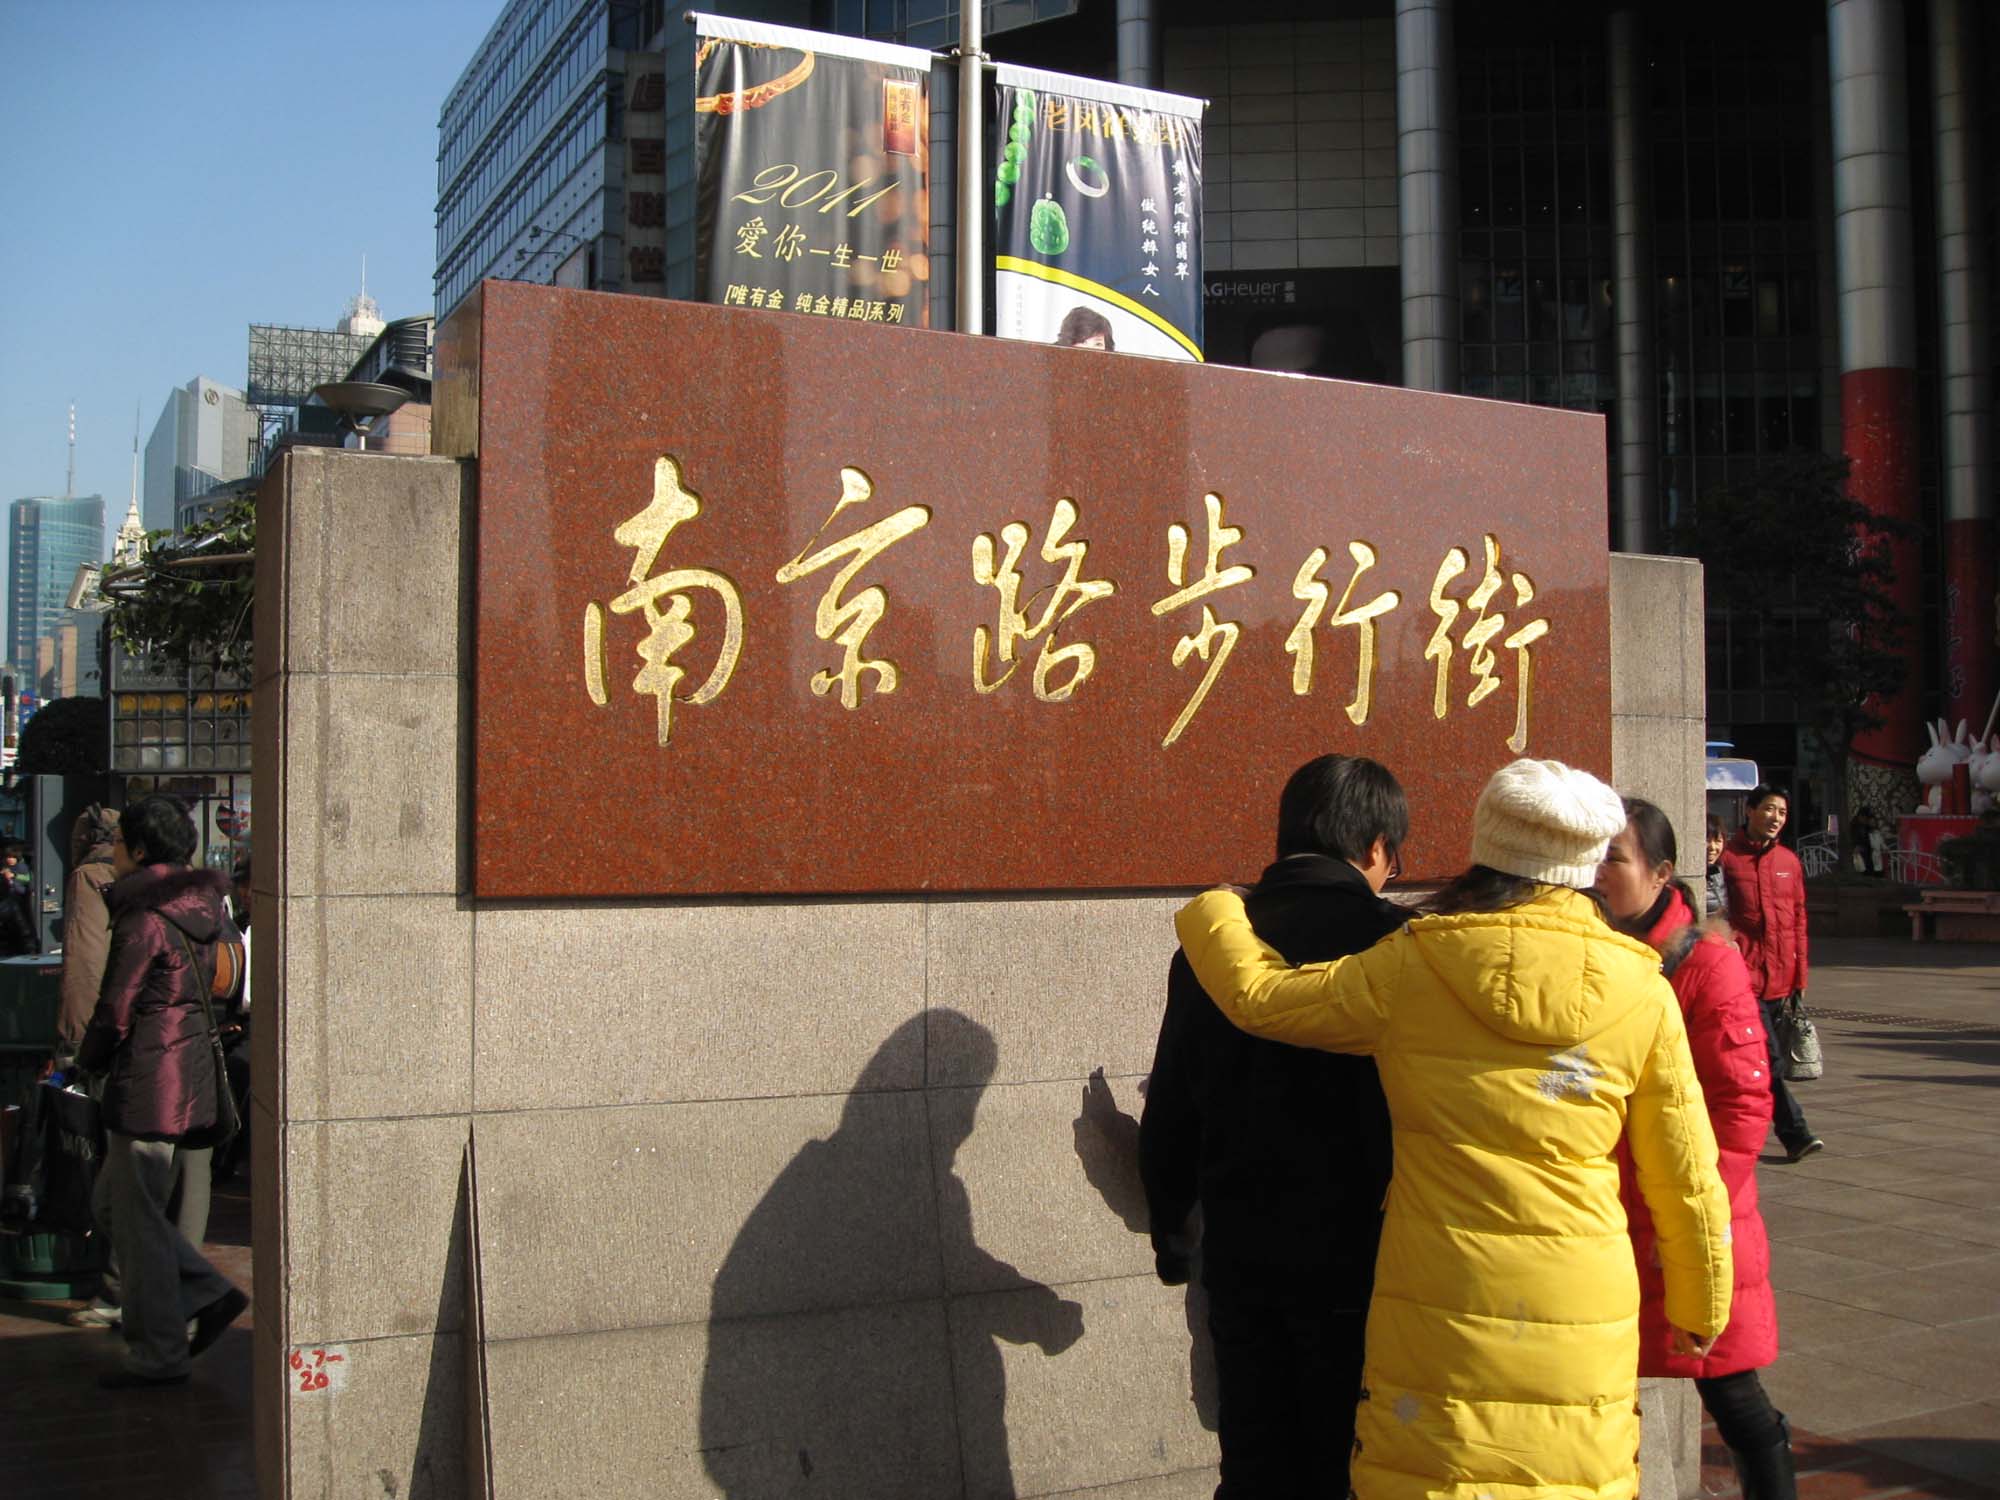 上海南京路步行街标志图片